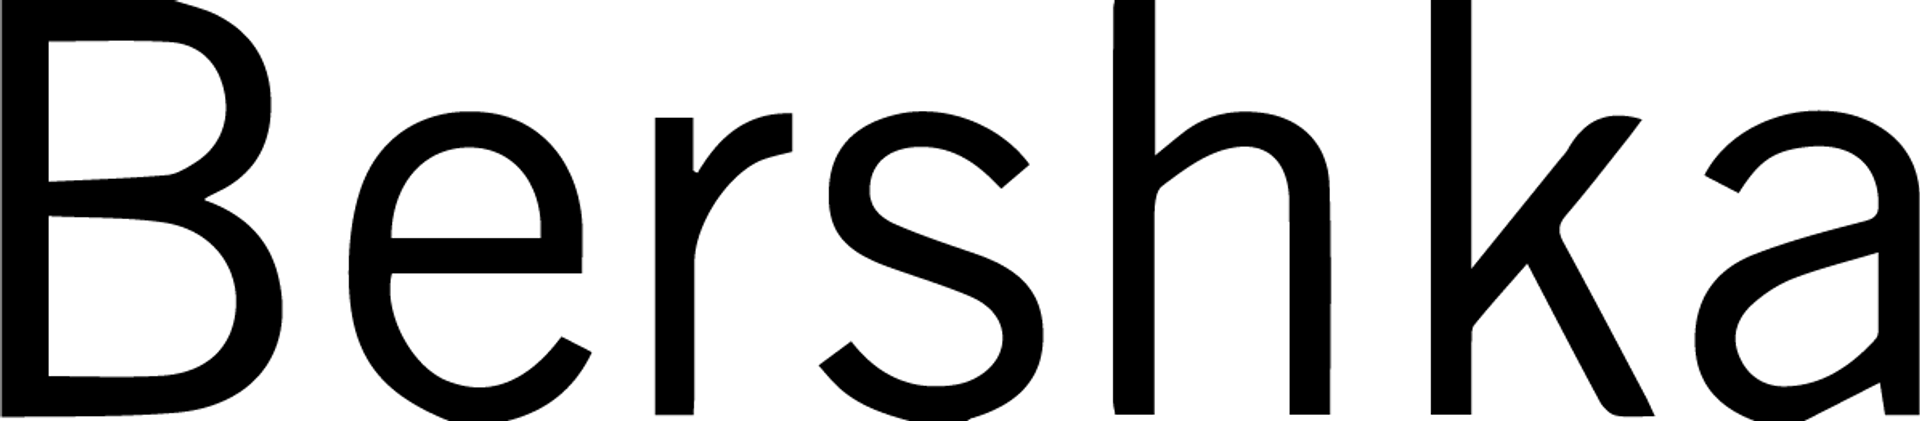 BERSHKA logo die aktuell Flugblatt